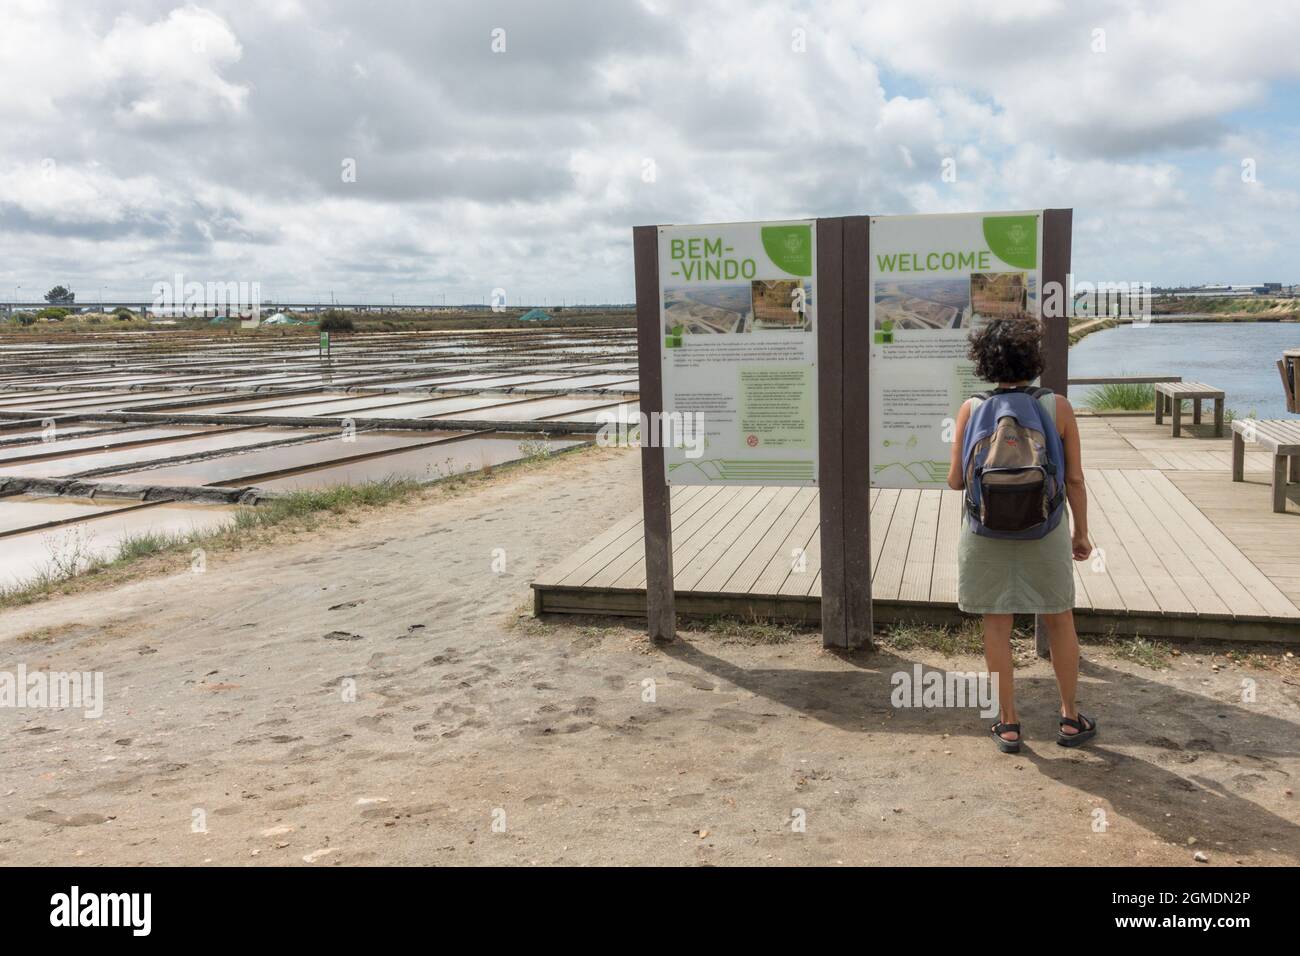 Frau, die vor der Informationstafel des Freilichtmuseums Eco Museum, Aveiro salinas, Salzpfannen in der Stadt Aveiro, Portugal, steht Stockfoto